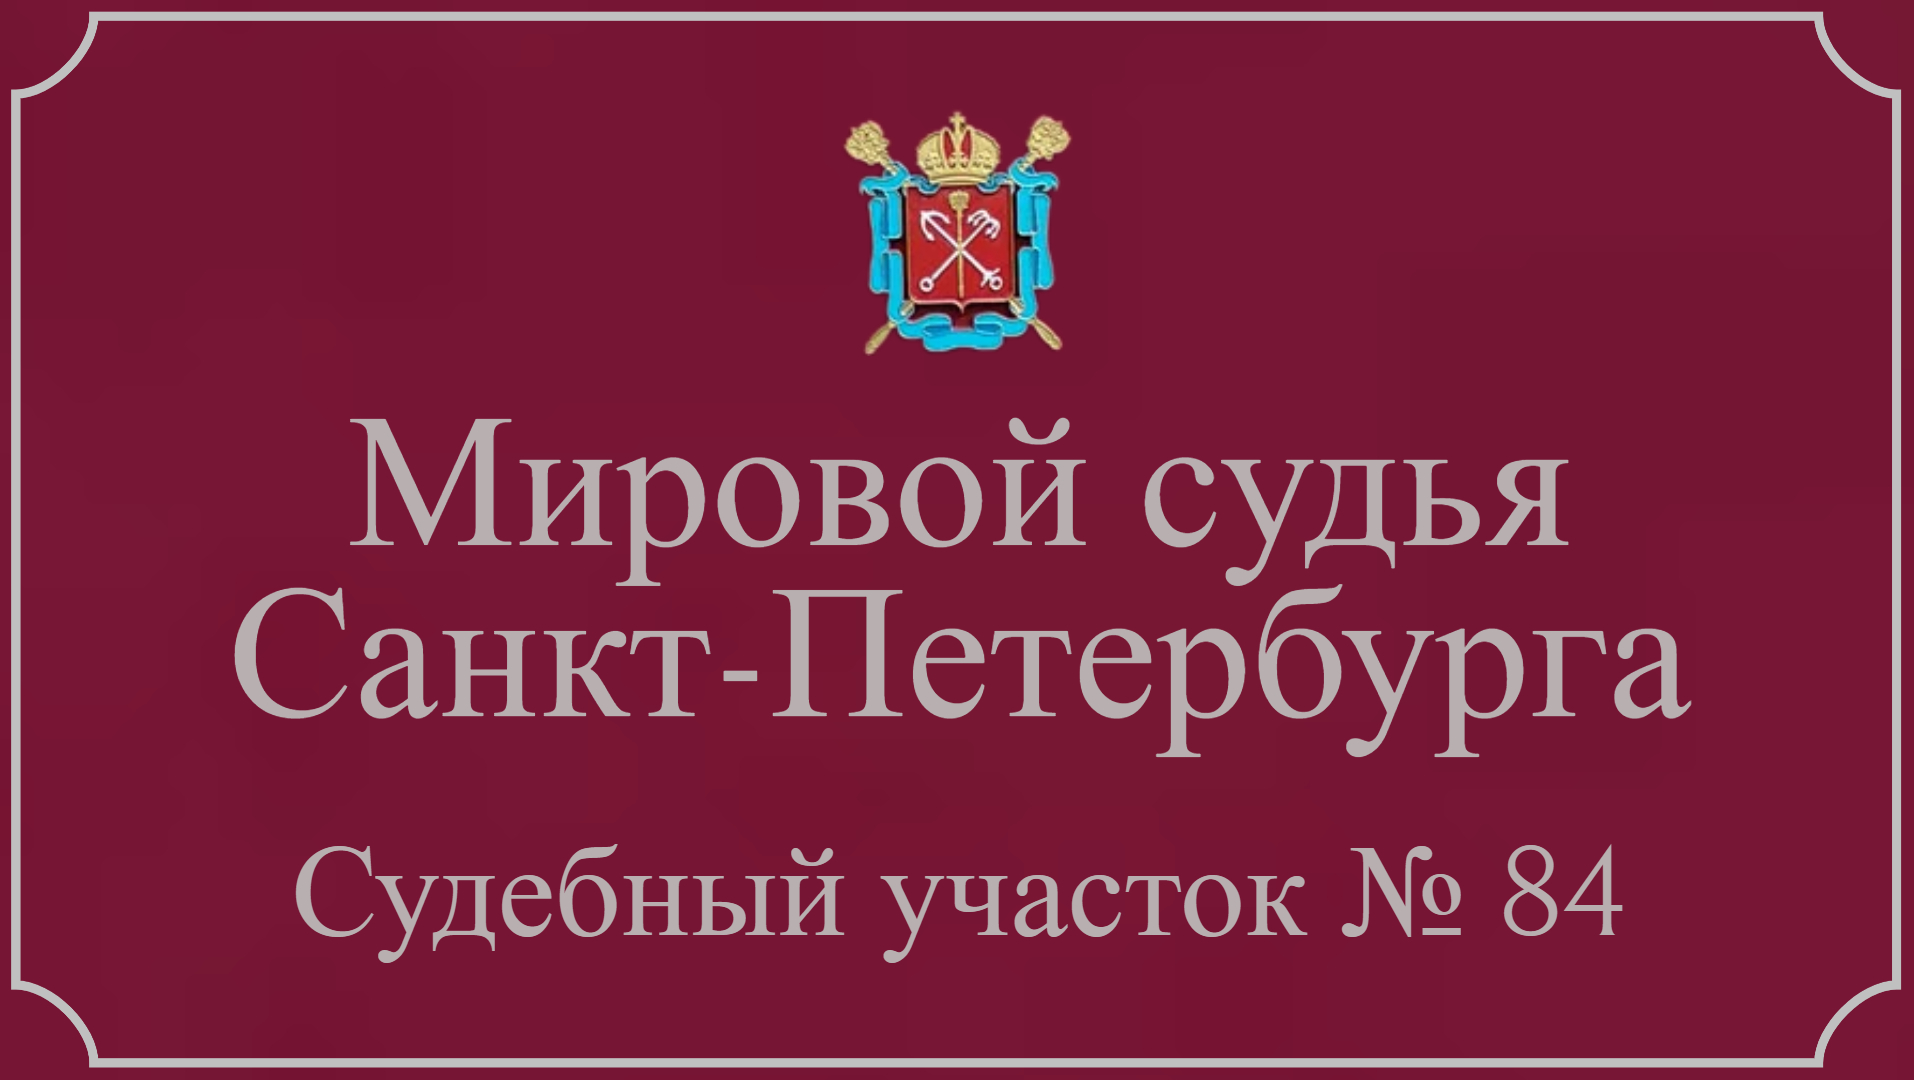 Информация по 84 судебному участку в Санкт-Петербурге.